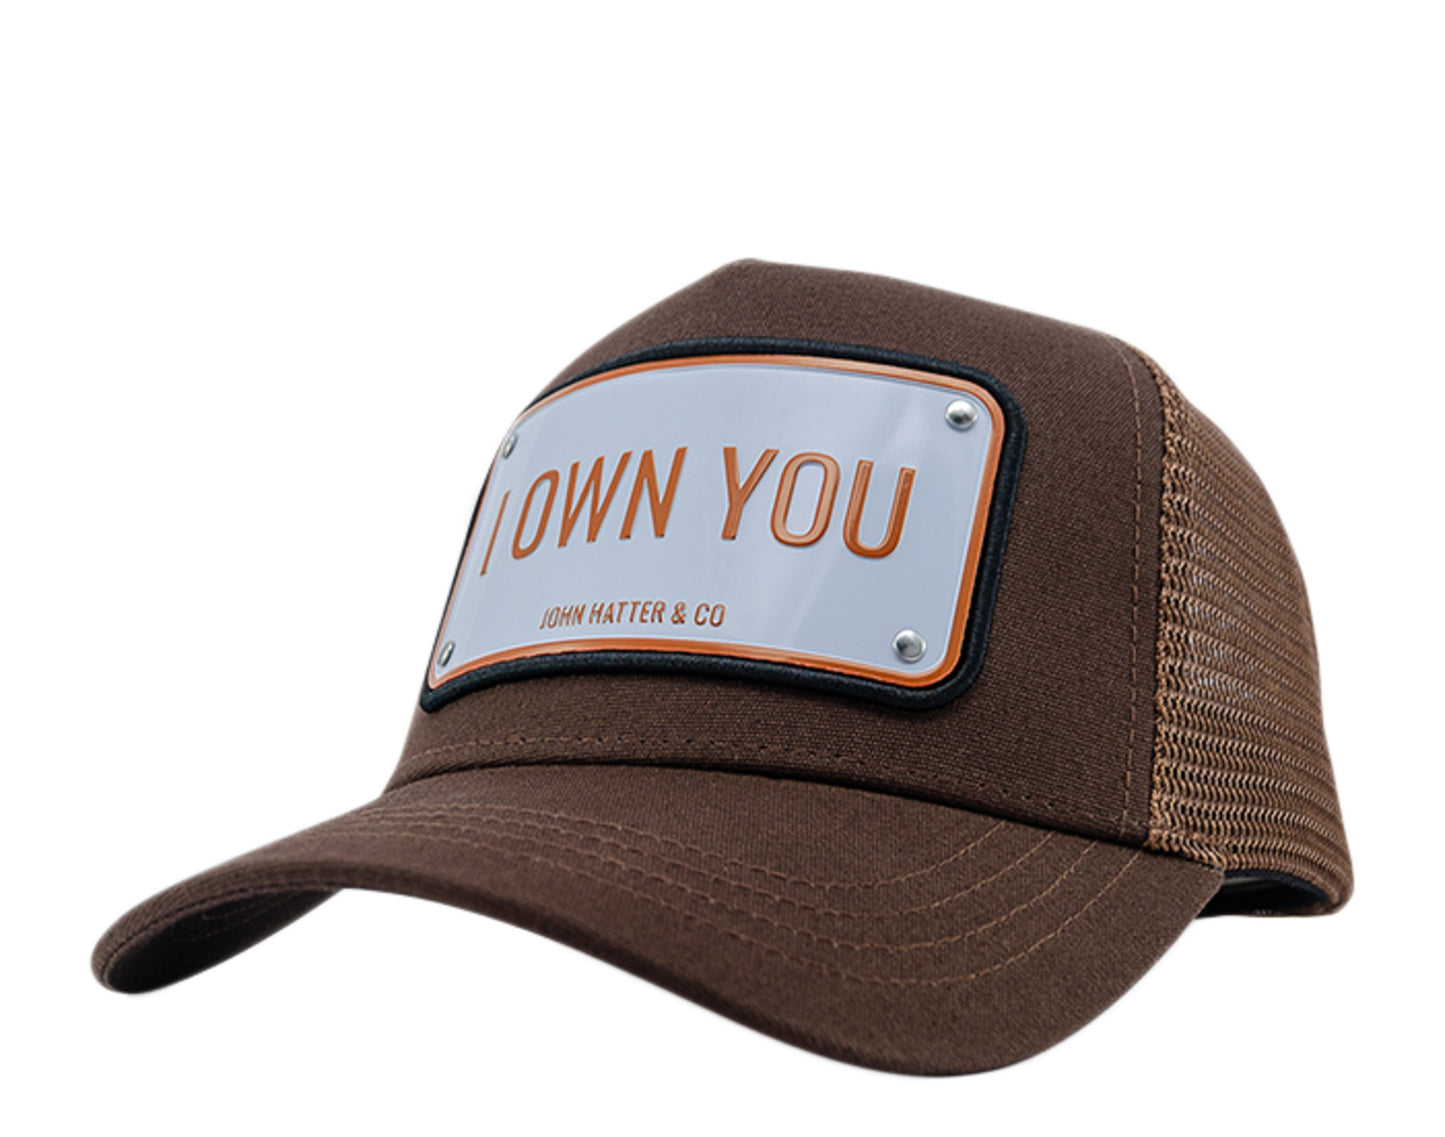 John Hatter & Co I Own You Brown/White/Orange Trucker Hat 1023-BROWN